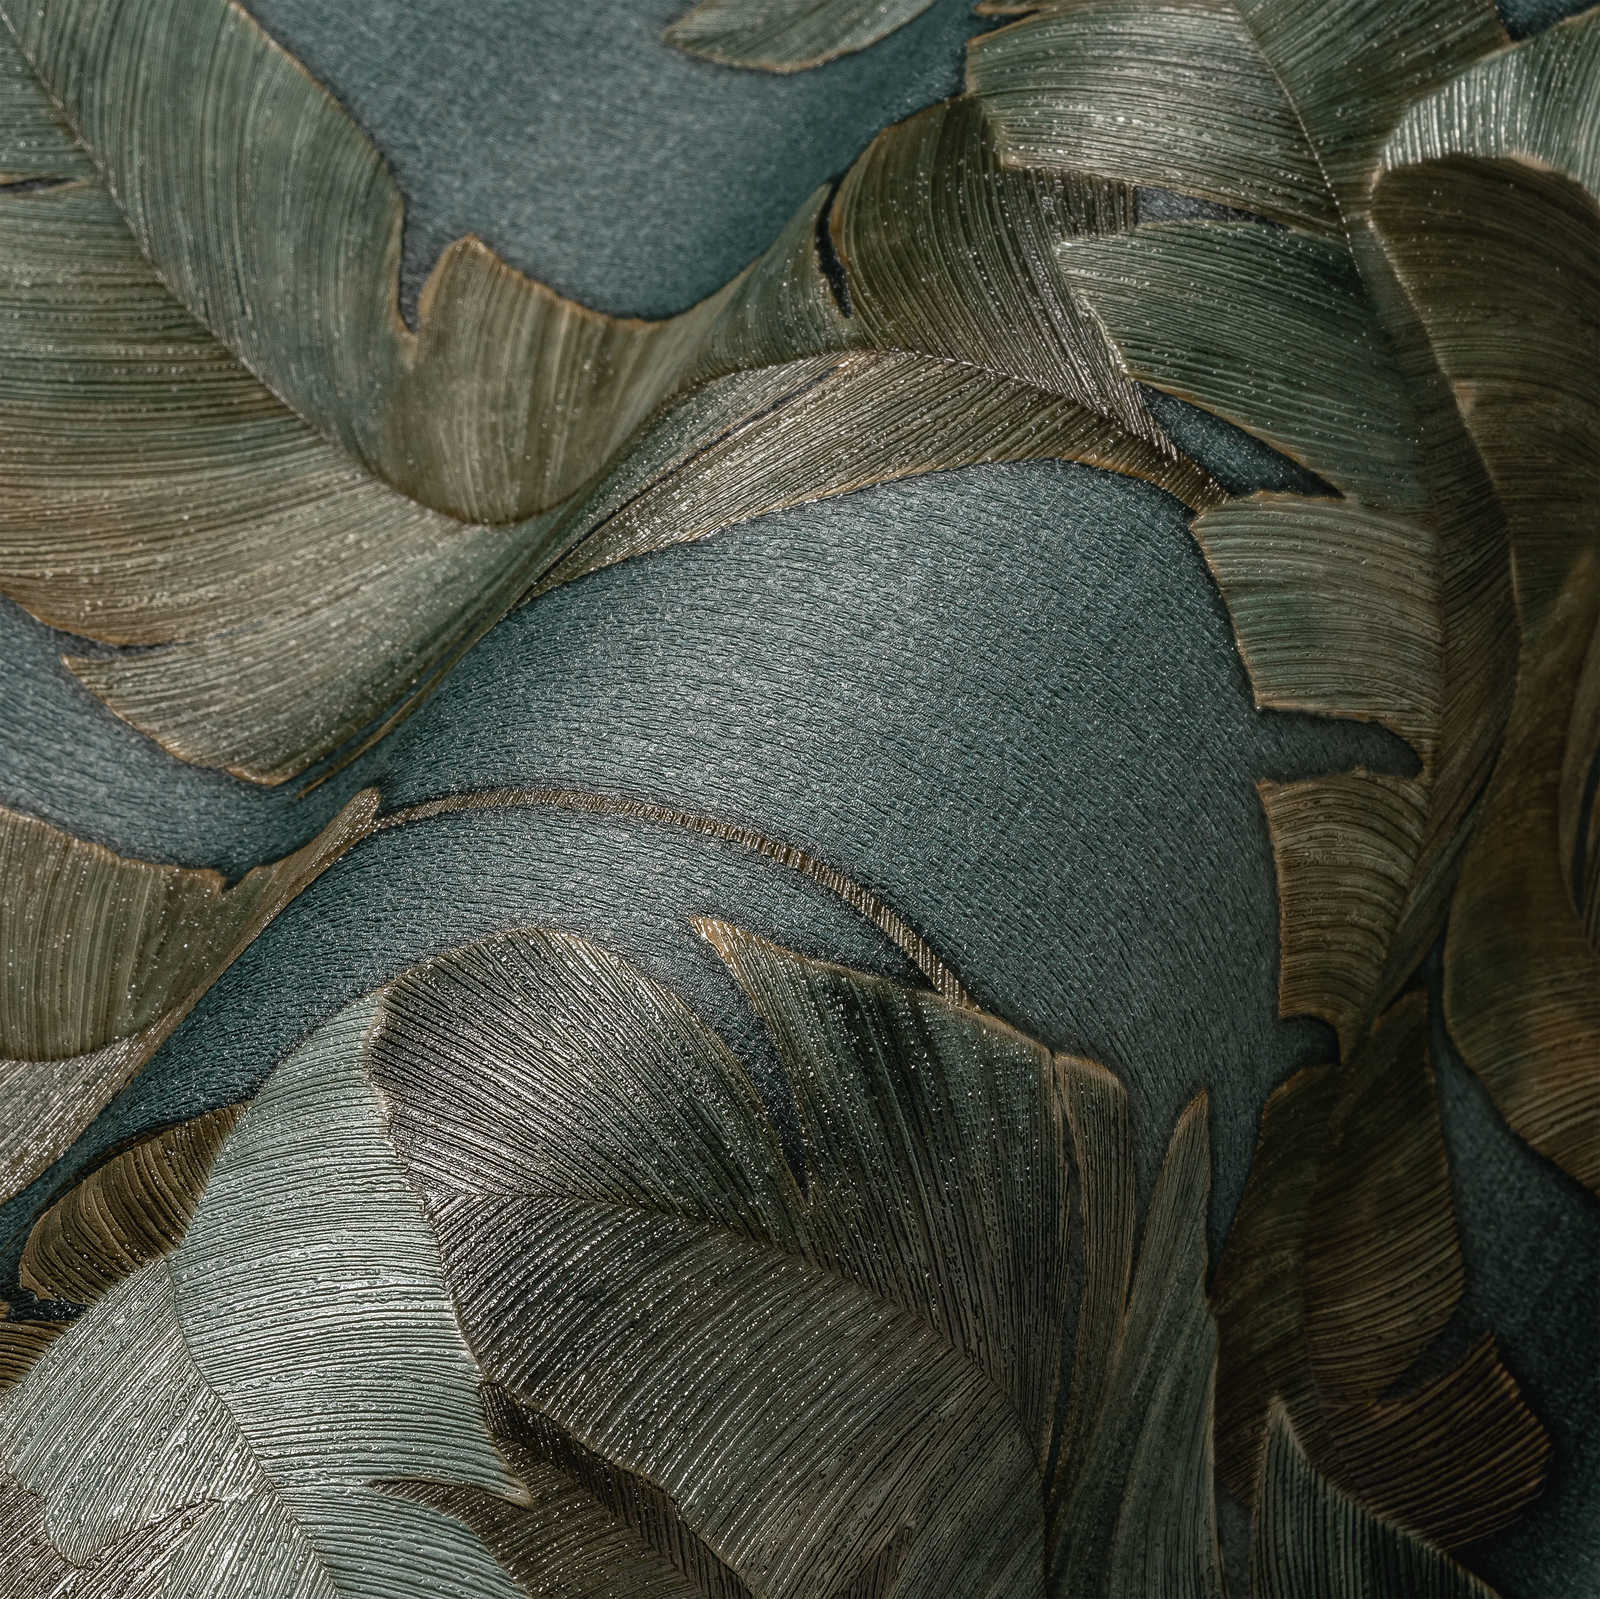             Vliestapete mit große Palmenblätter in dunkler Farbe – Petrol, Grün, Braun
        